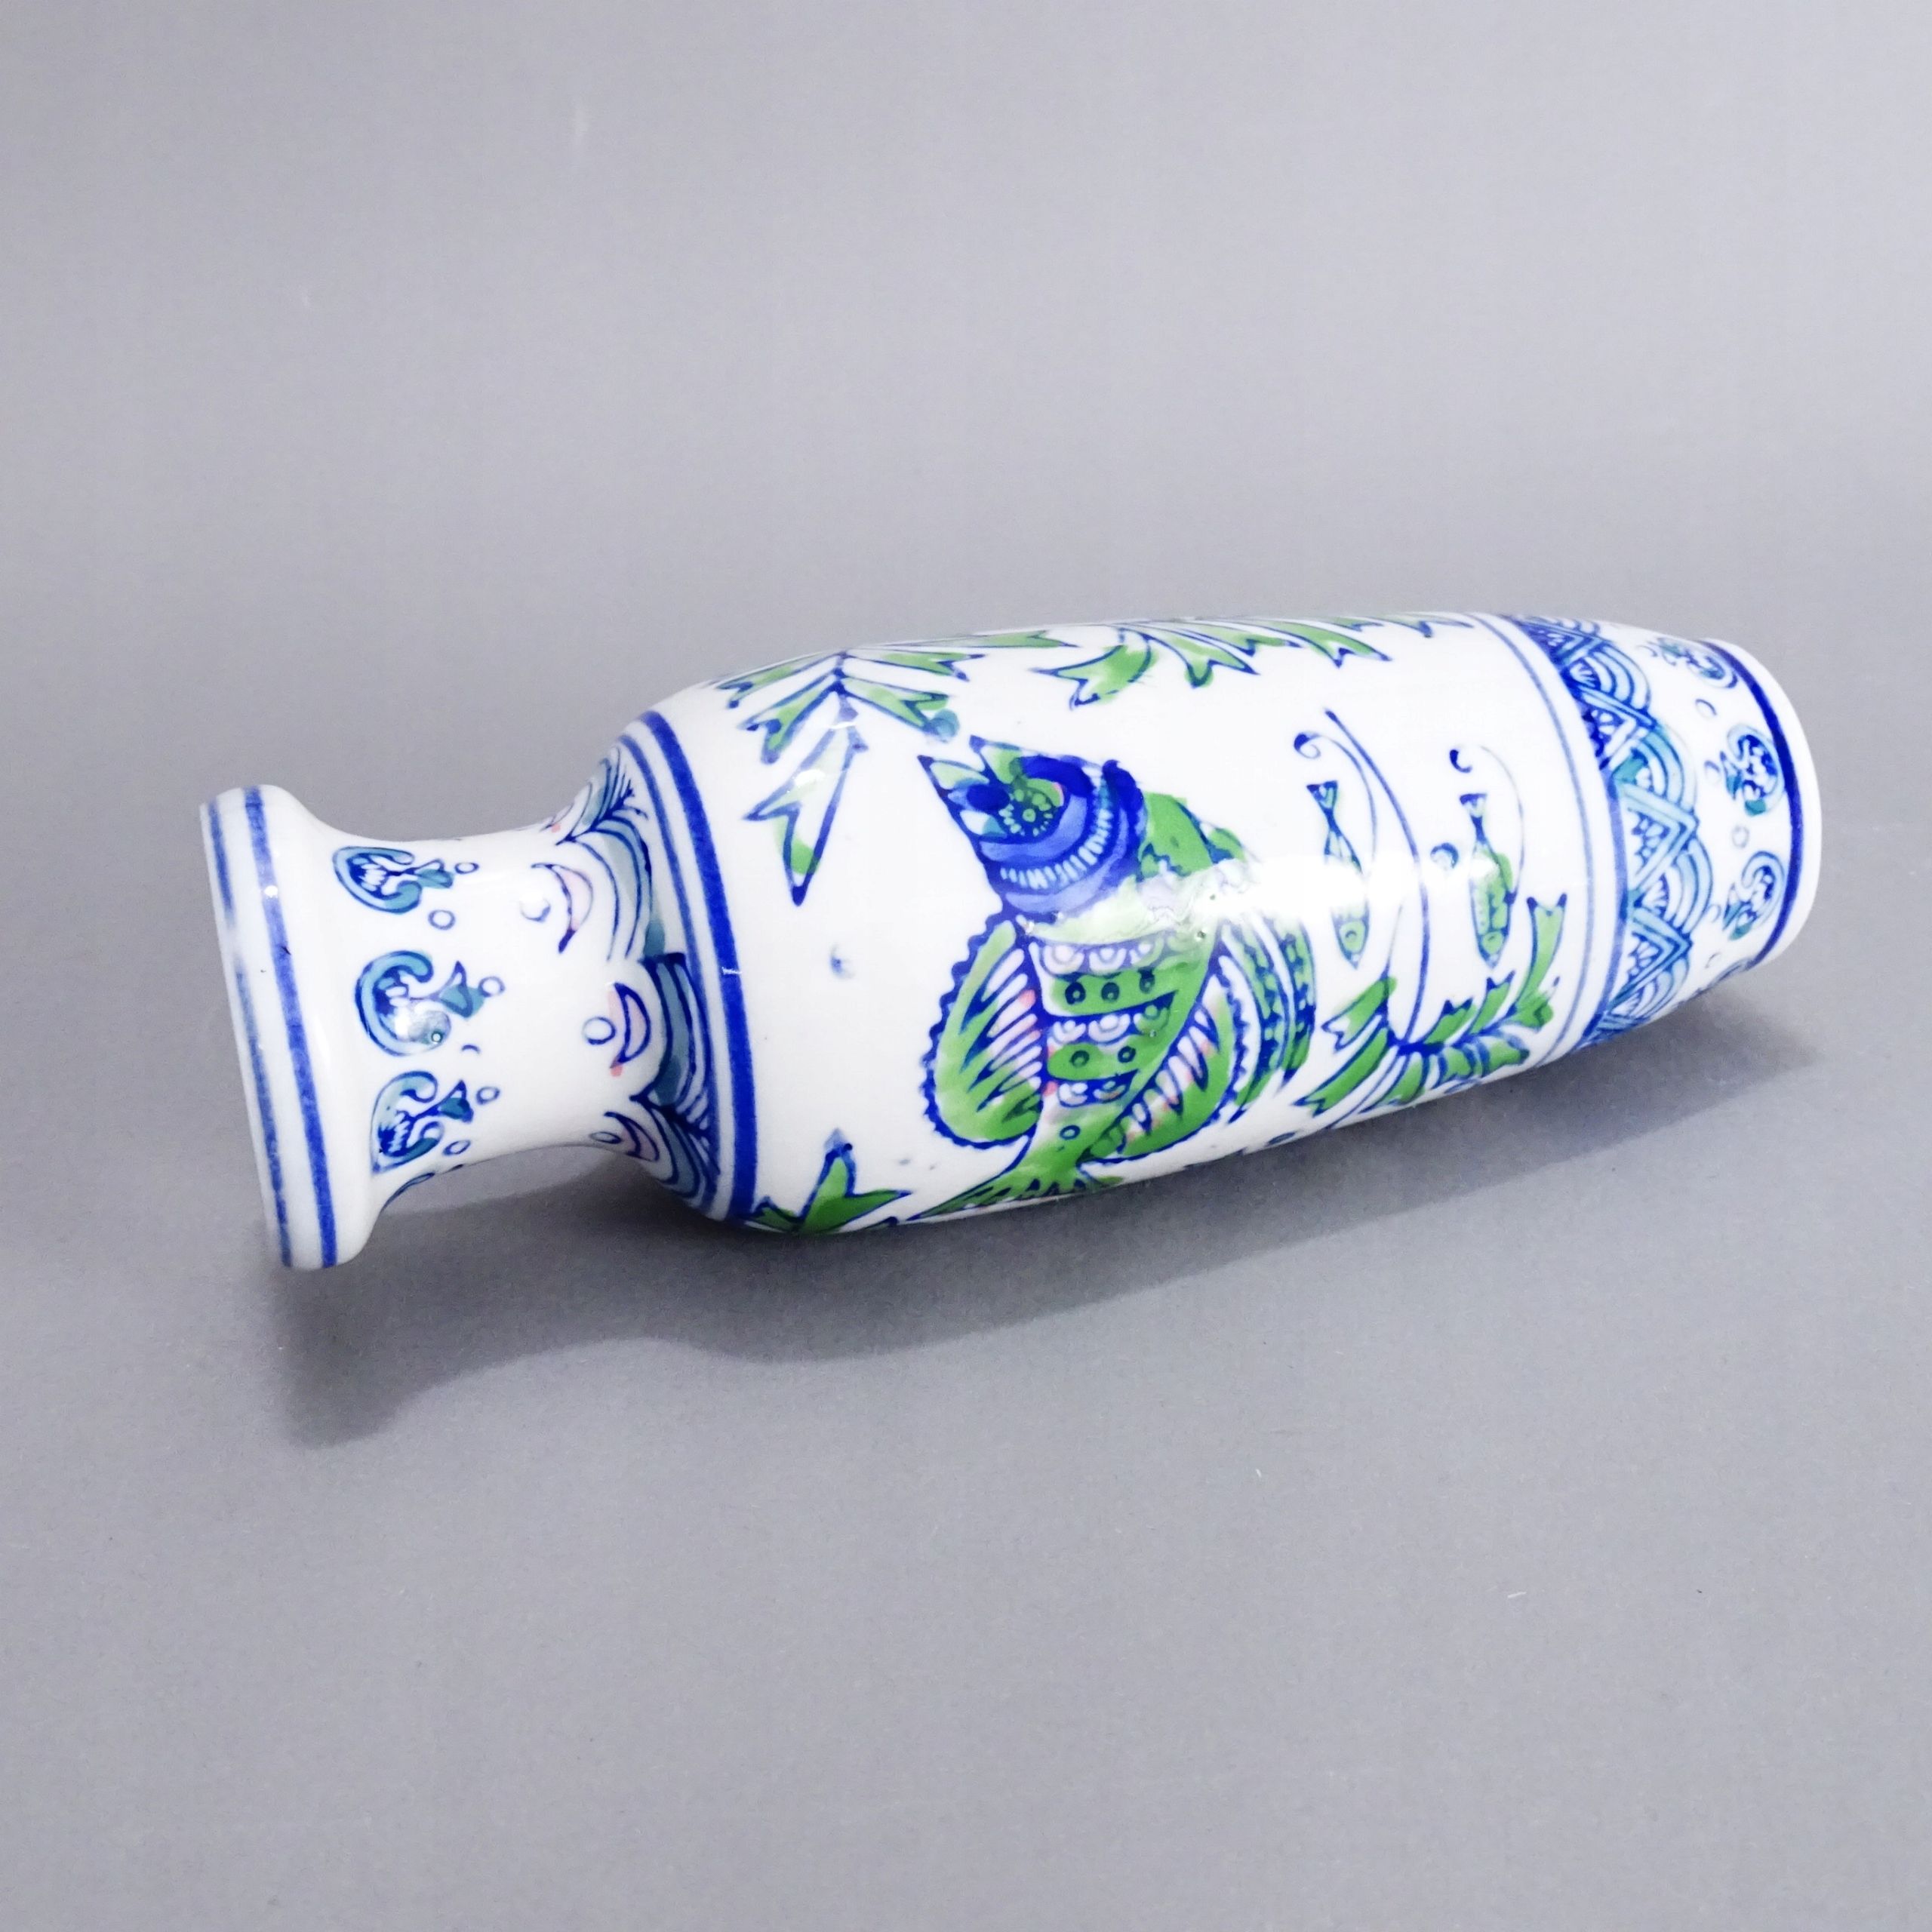 ręcznie malowany wazon porcelanowy ryby azja